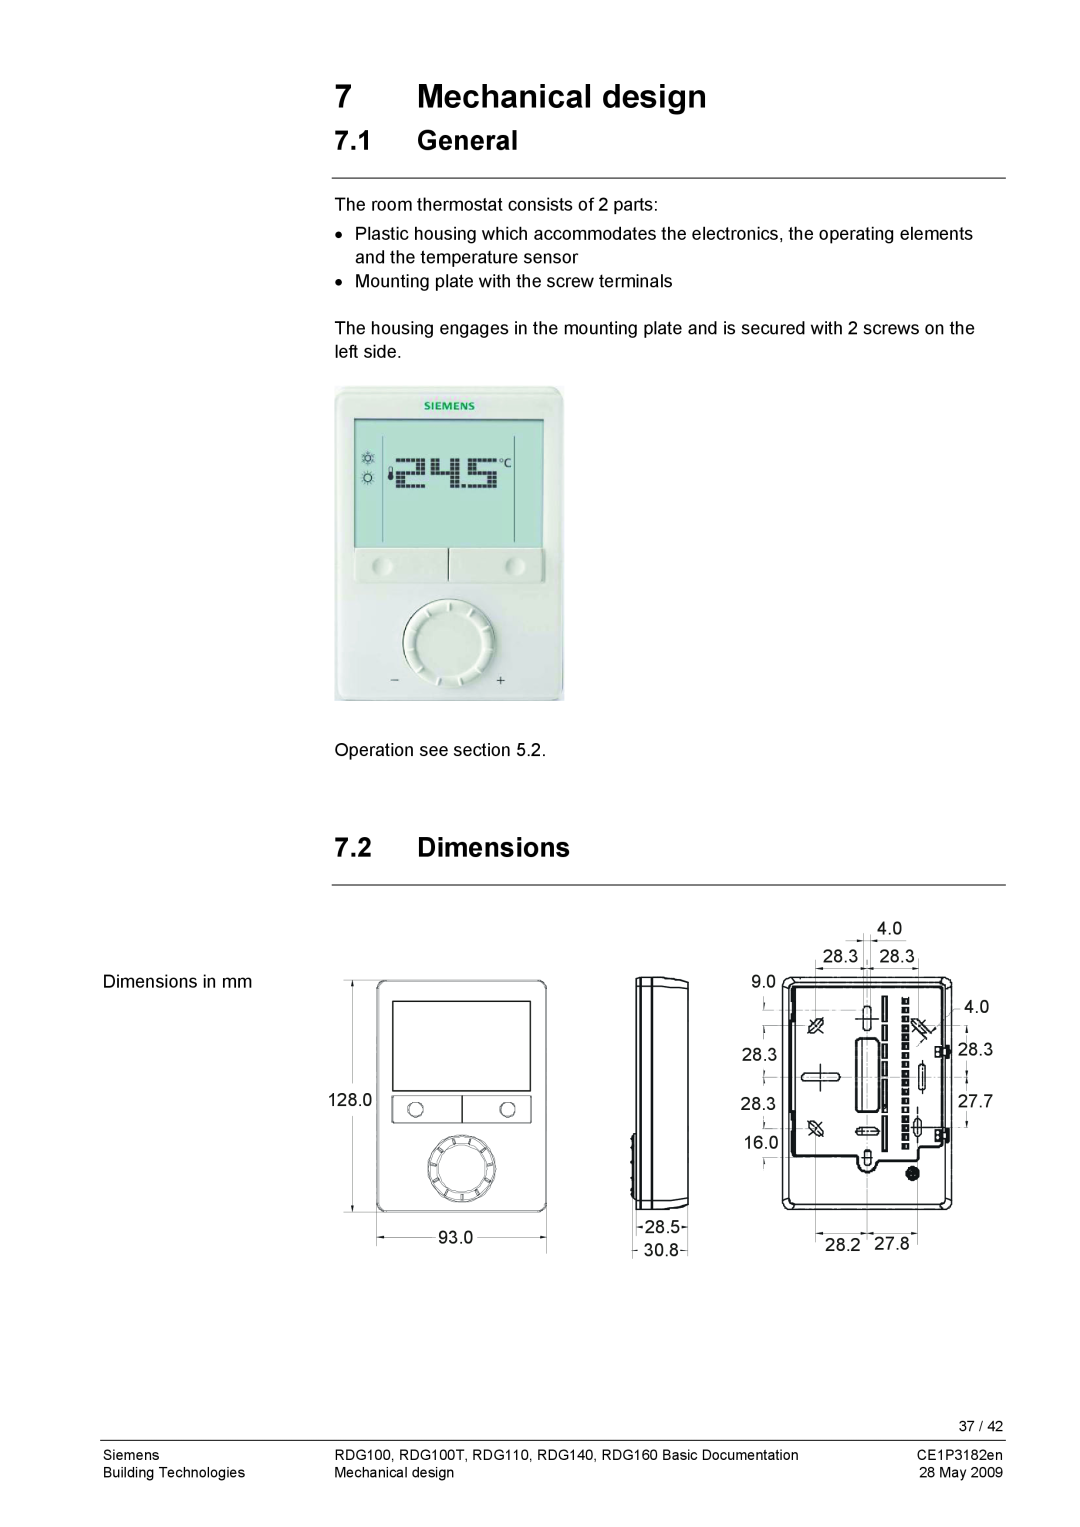 Siemens RDG400 manual Mechanical design, 7.1General, 7.2Dimensions 